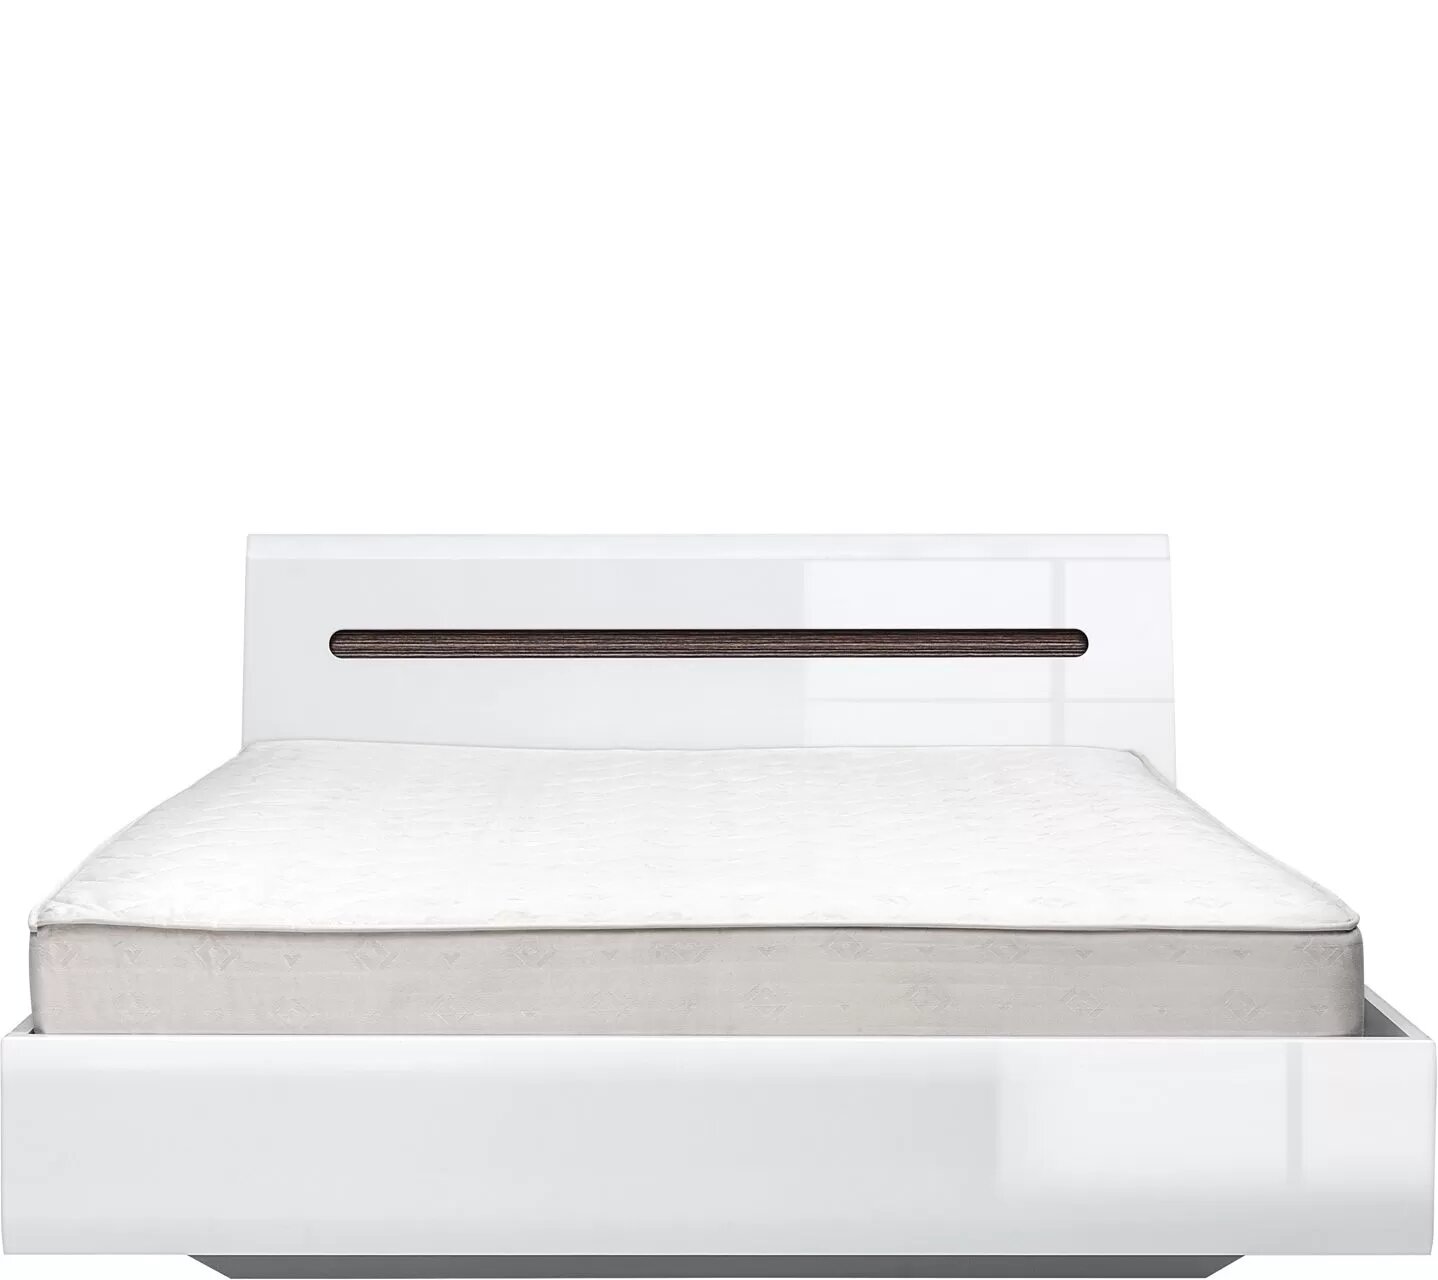 Двуспальная кровать БРВ мебель Ацтека S205-LOZ 160 белый